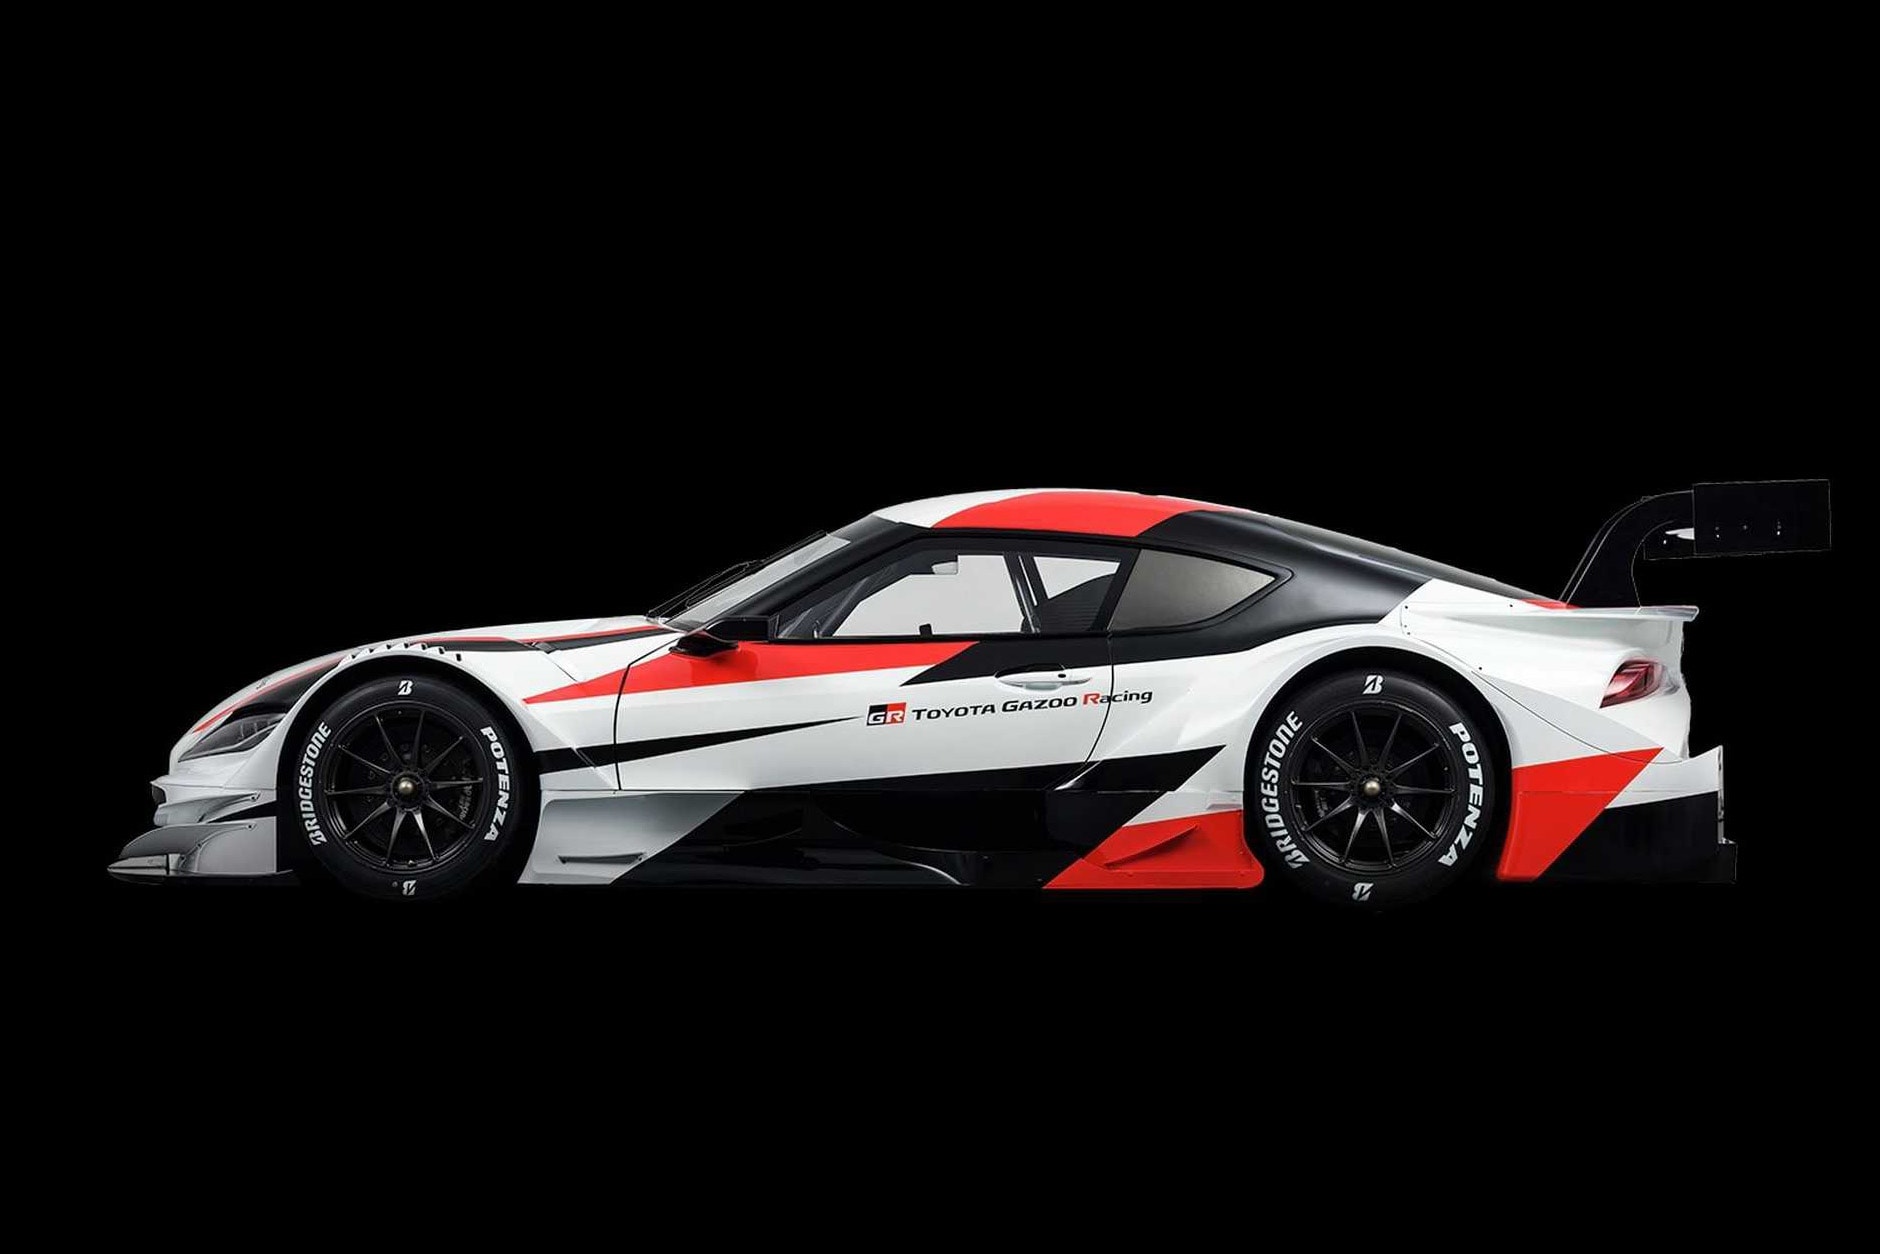 Toyota 全新 GR Supra Super GT 概念車登場